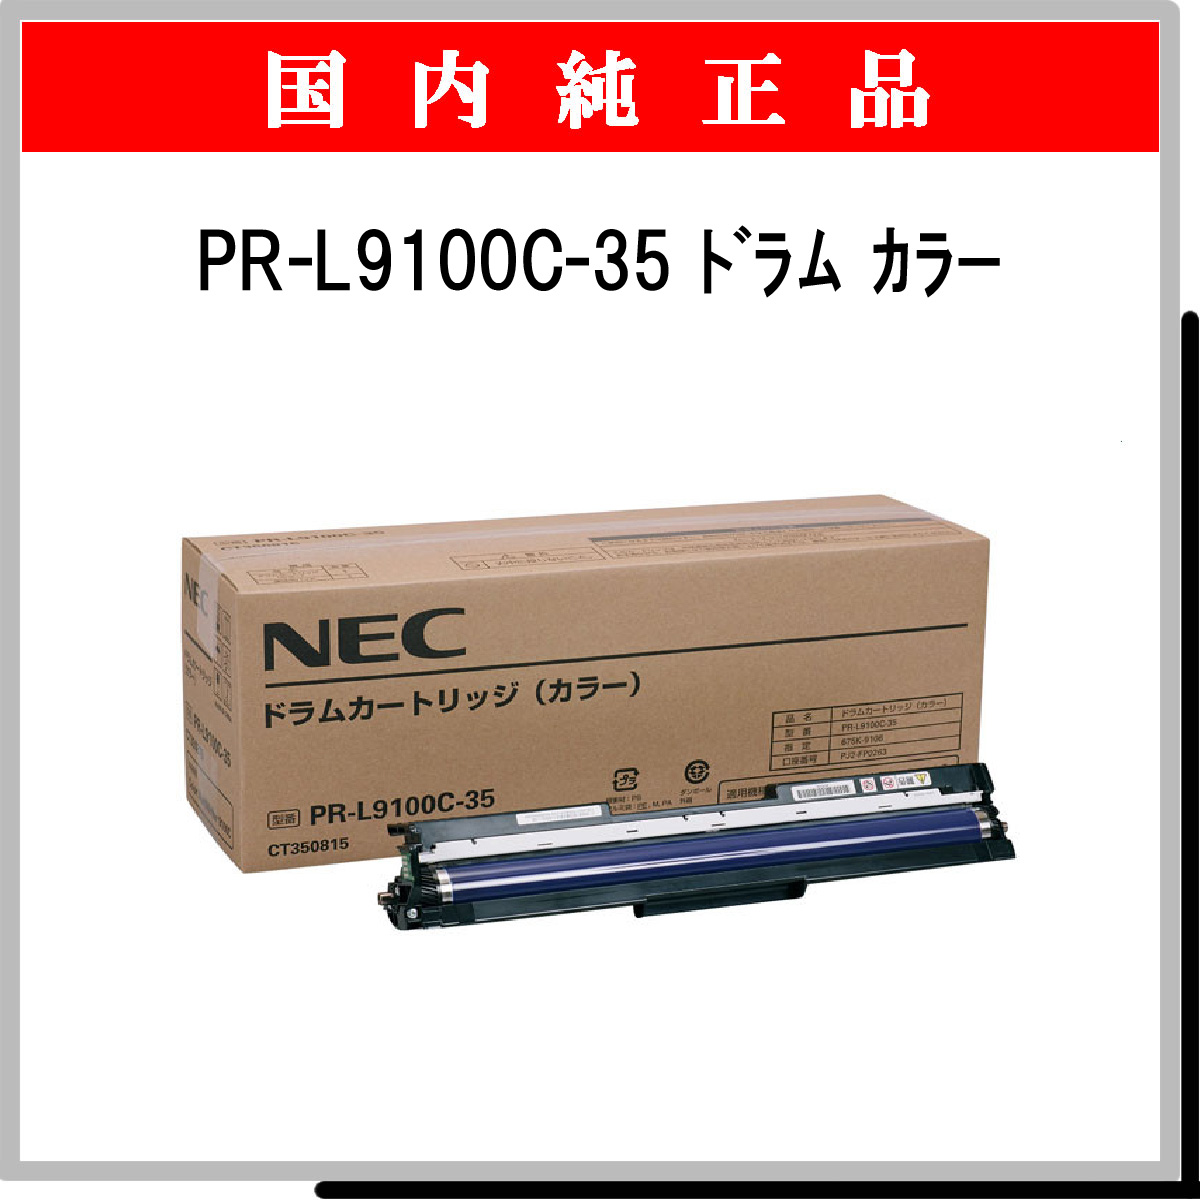 PR-L9100C-35 ｶﾗｰ 純正